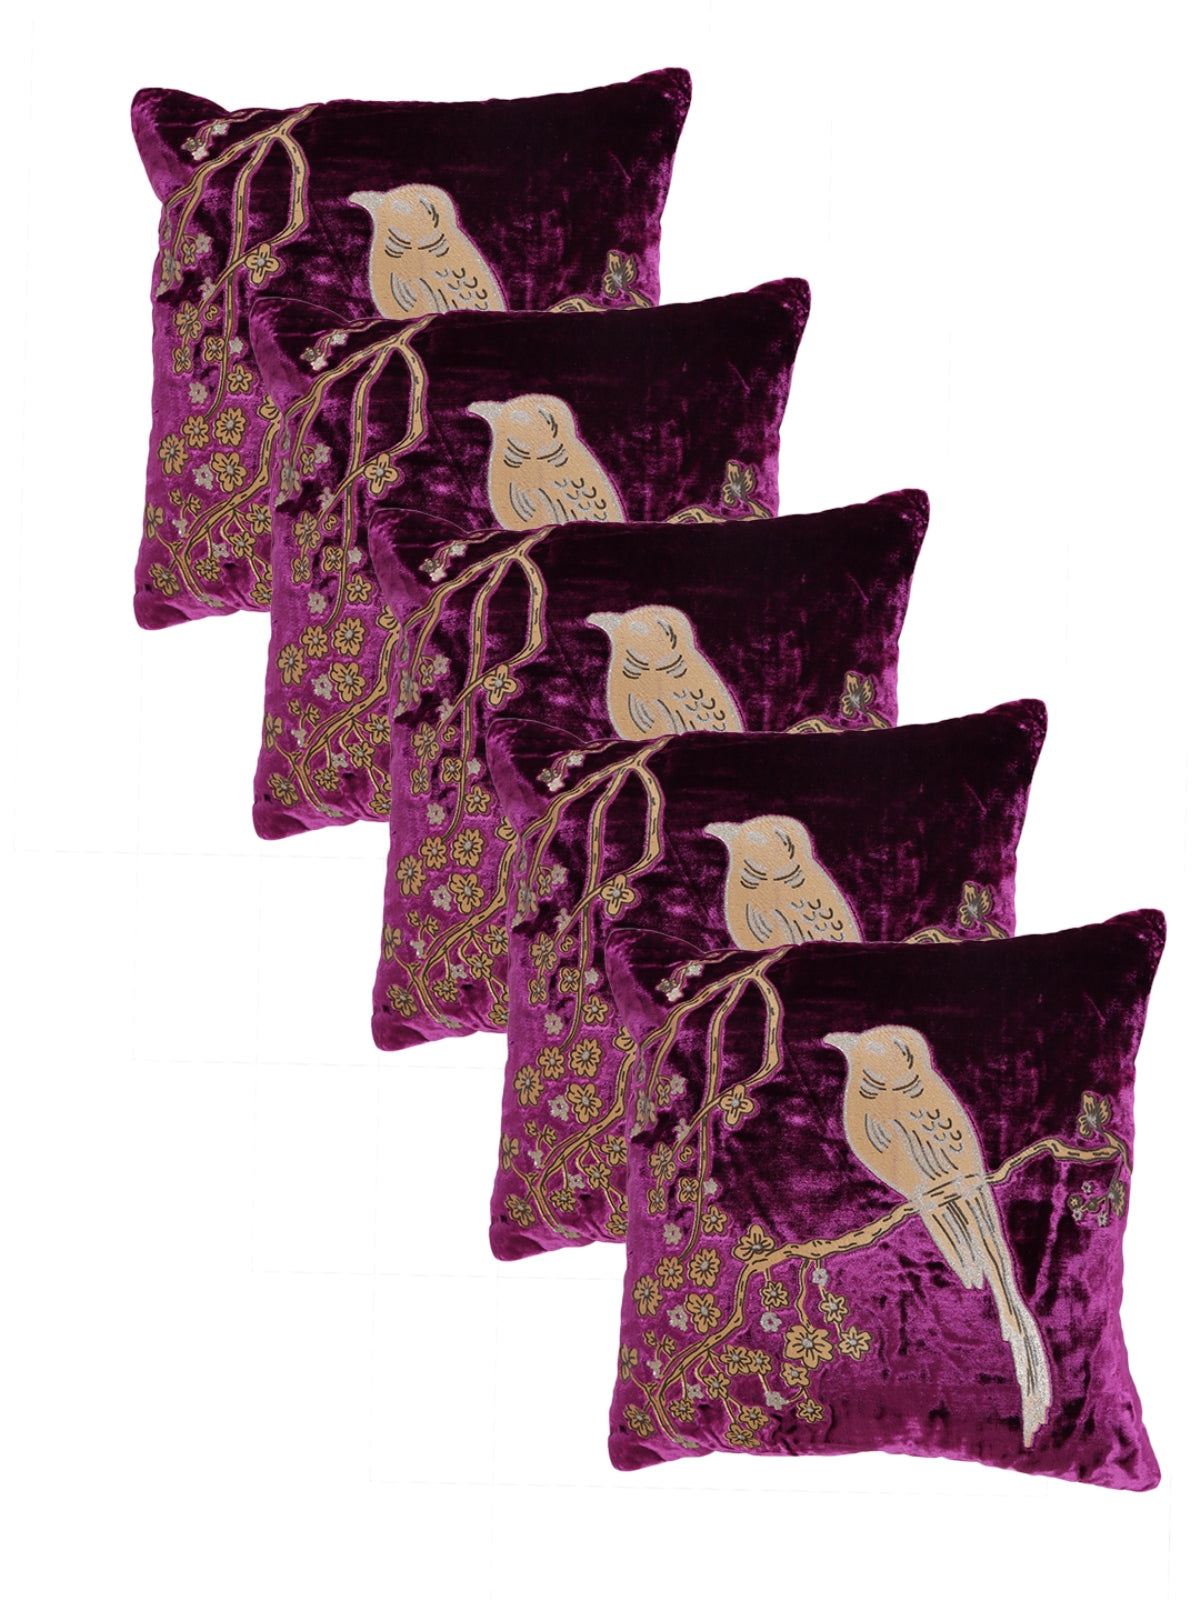 Velvet Bird Designer Cushion Cover 16x16 Inche, Set of 5 - Purple